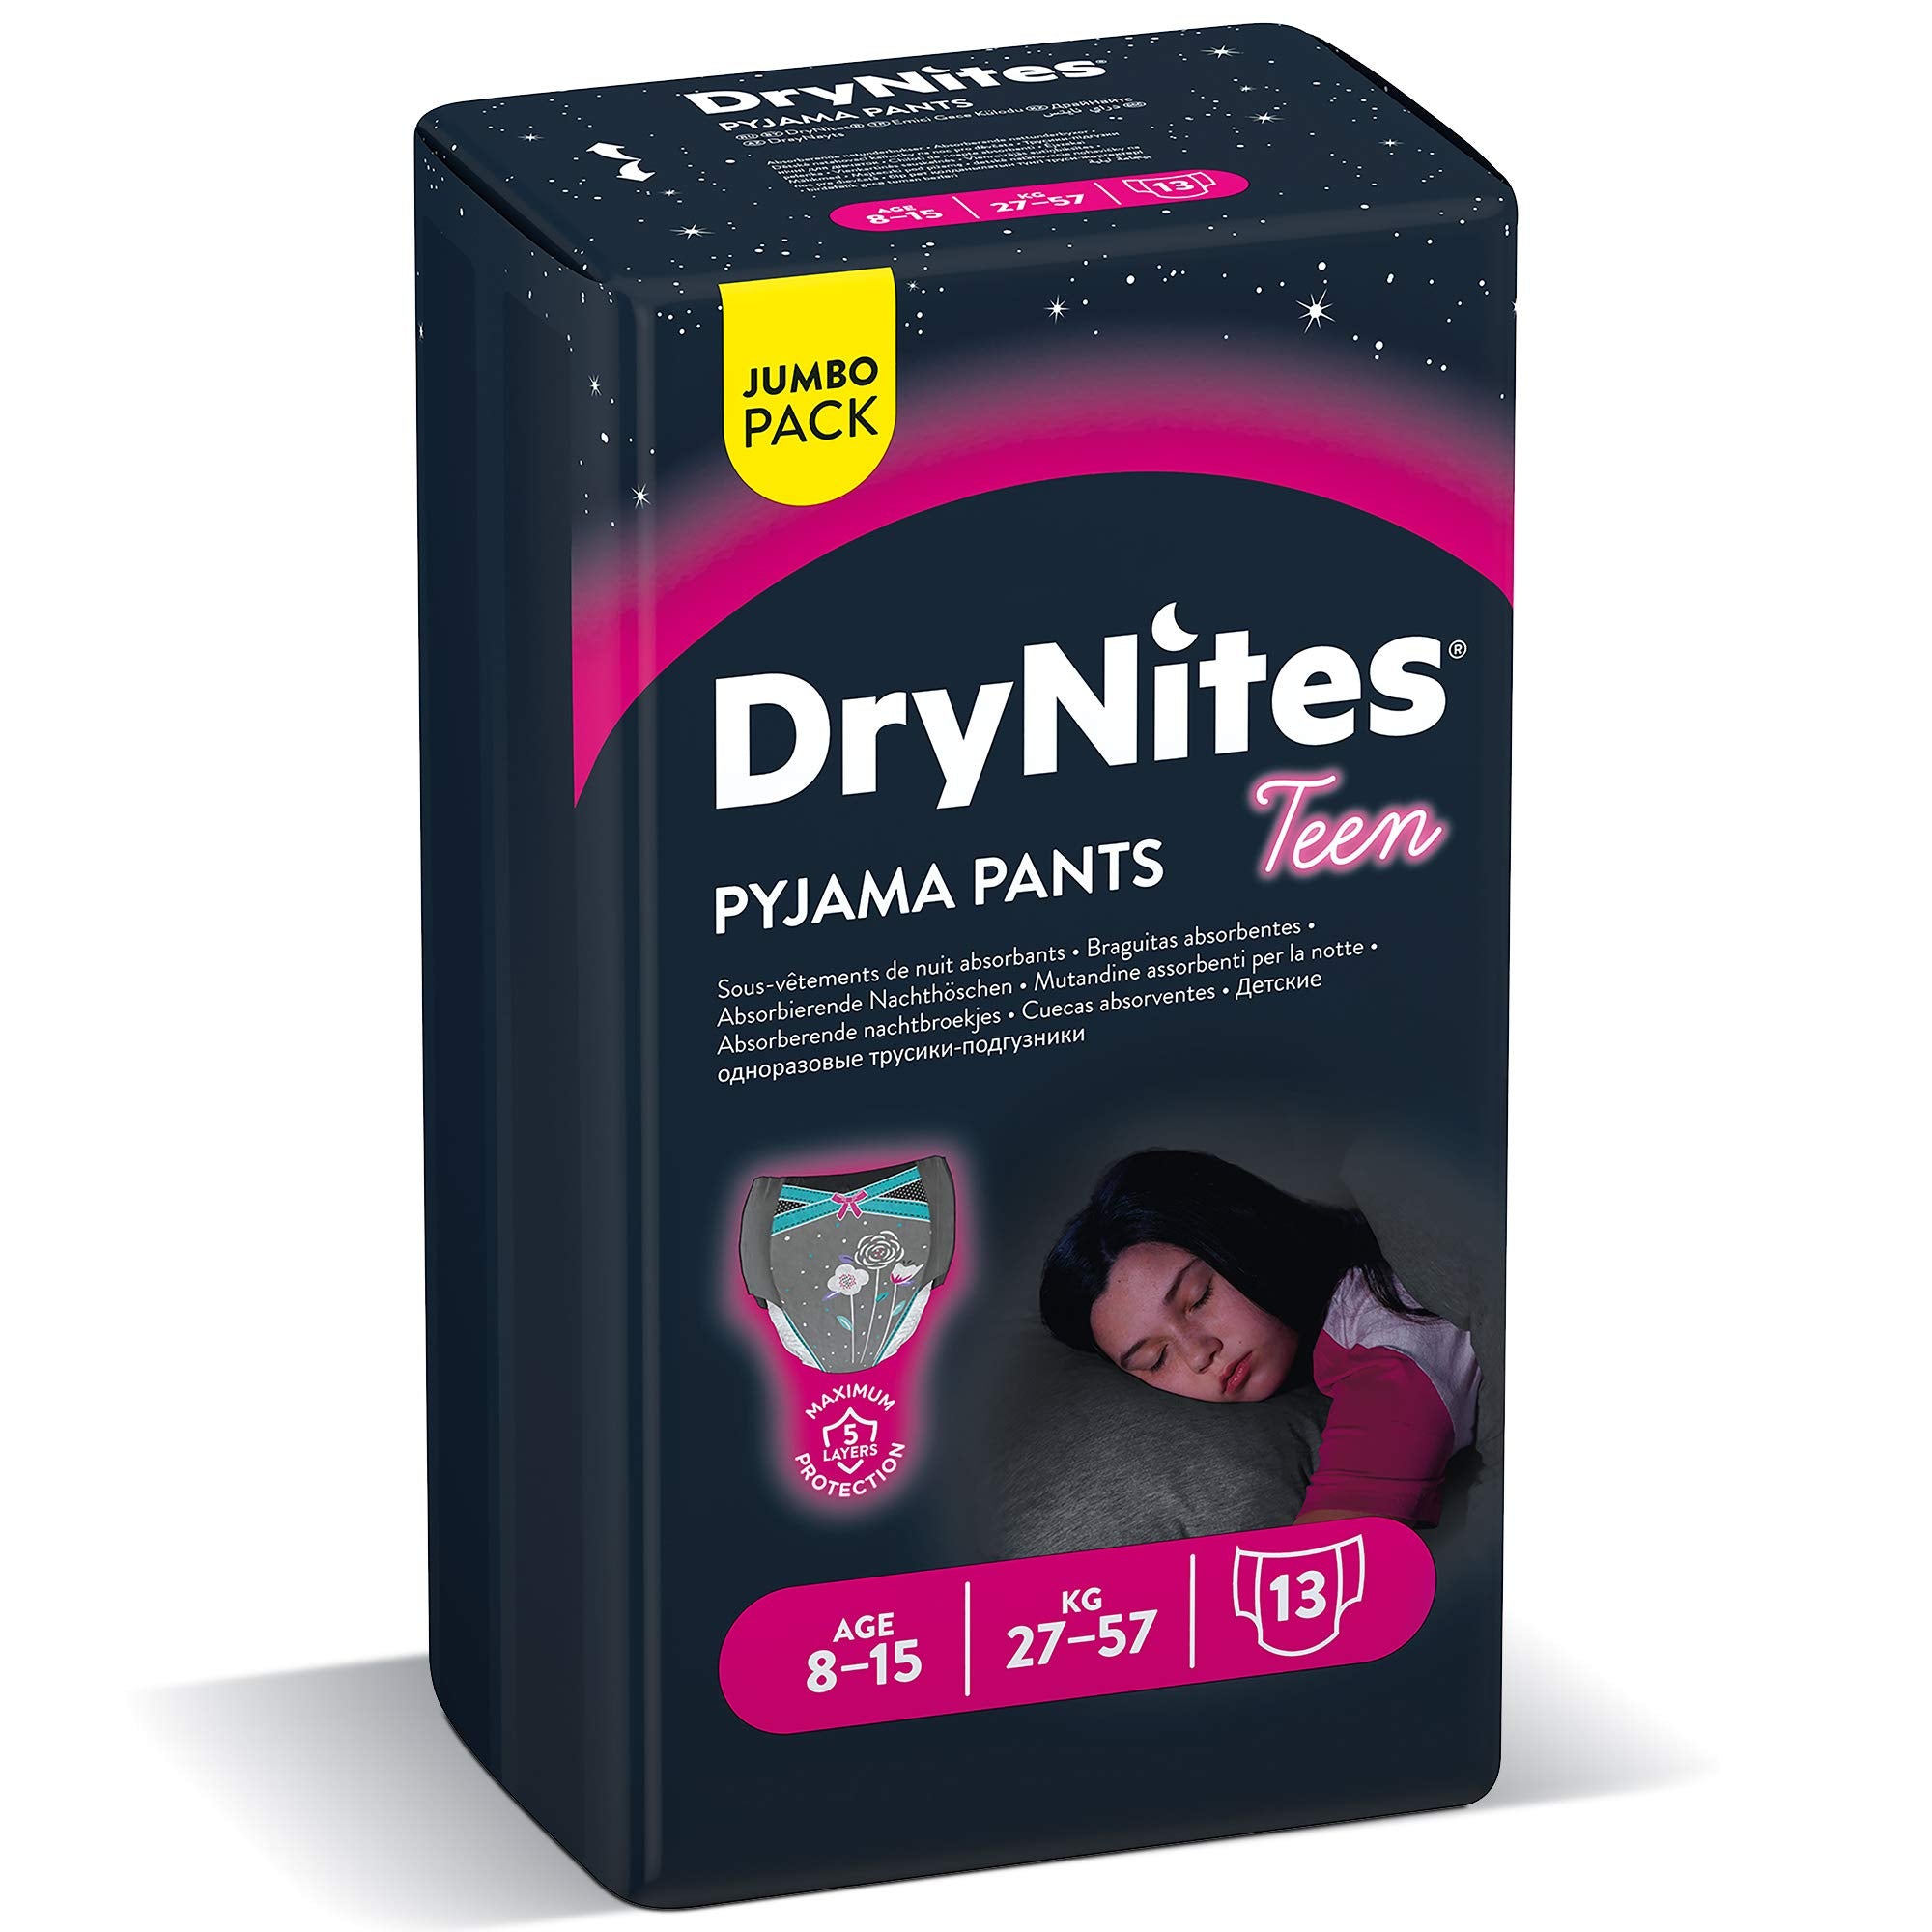 Drynites Pyjama Pants, Age 8-15 Y, Girl, 27-57 Kg, 13 Bed Wetting Pants